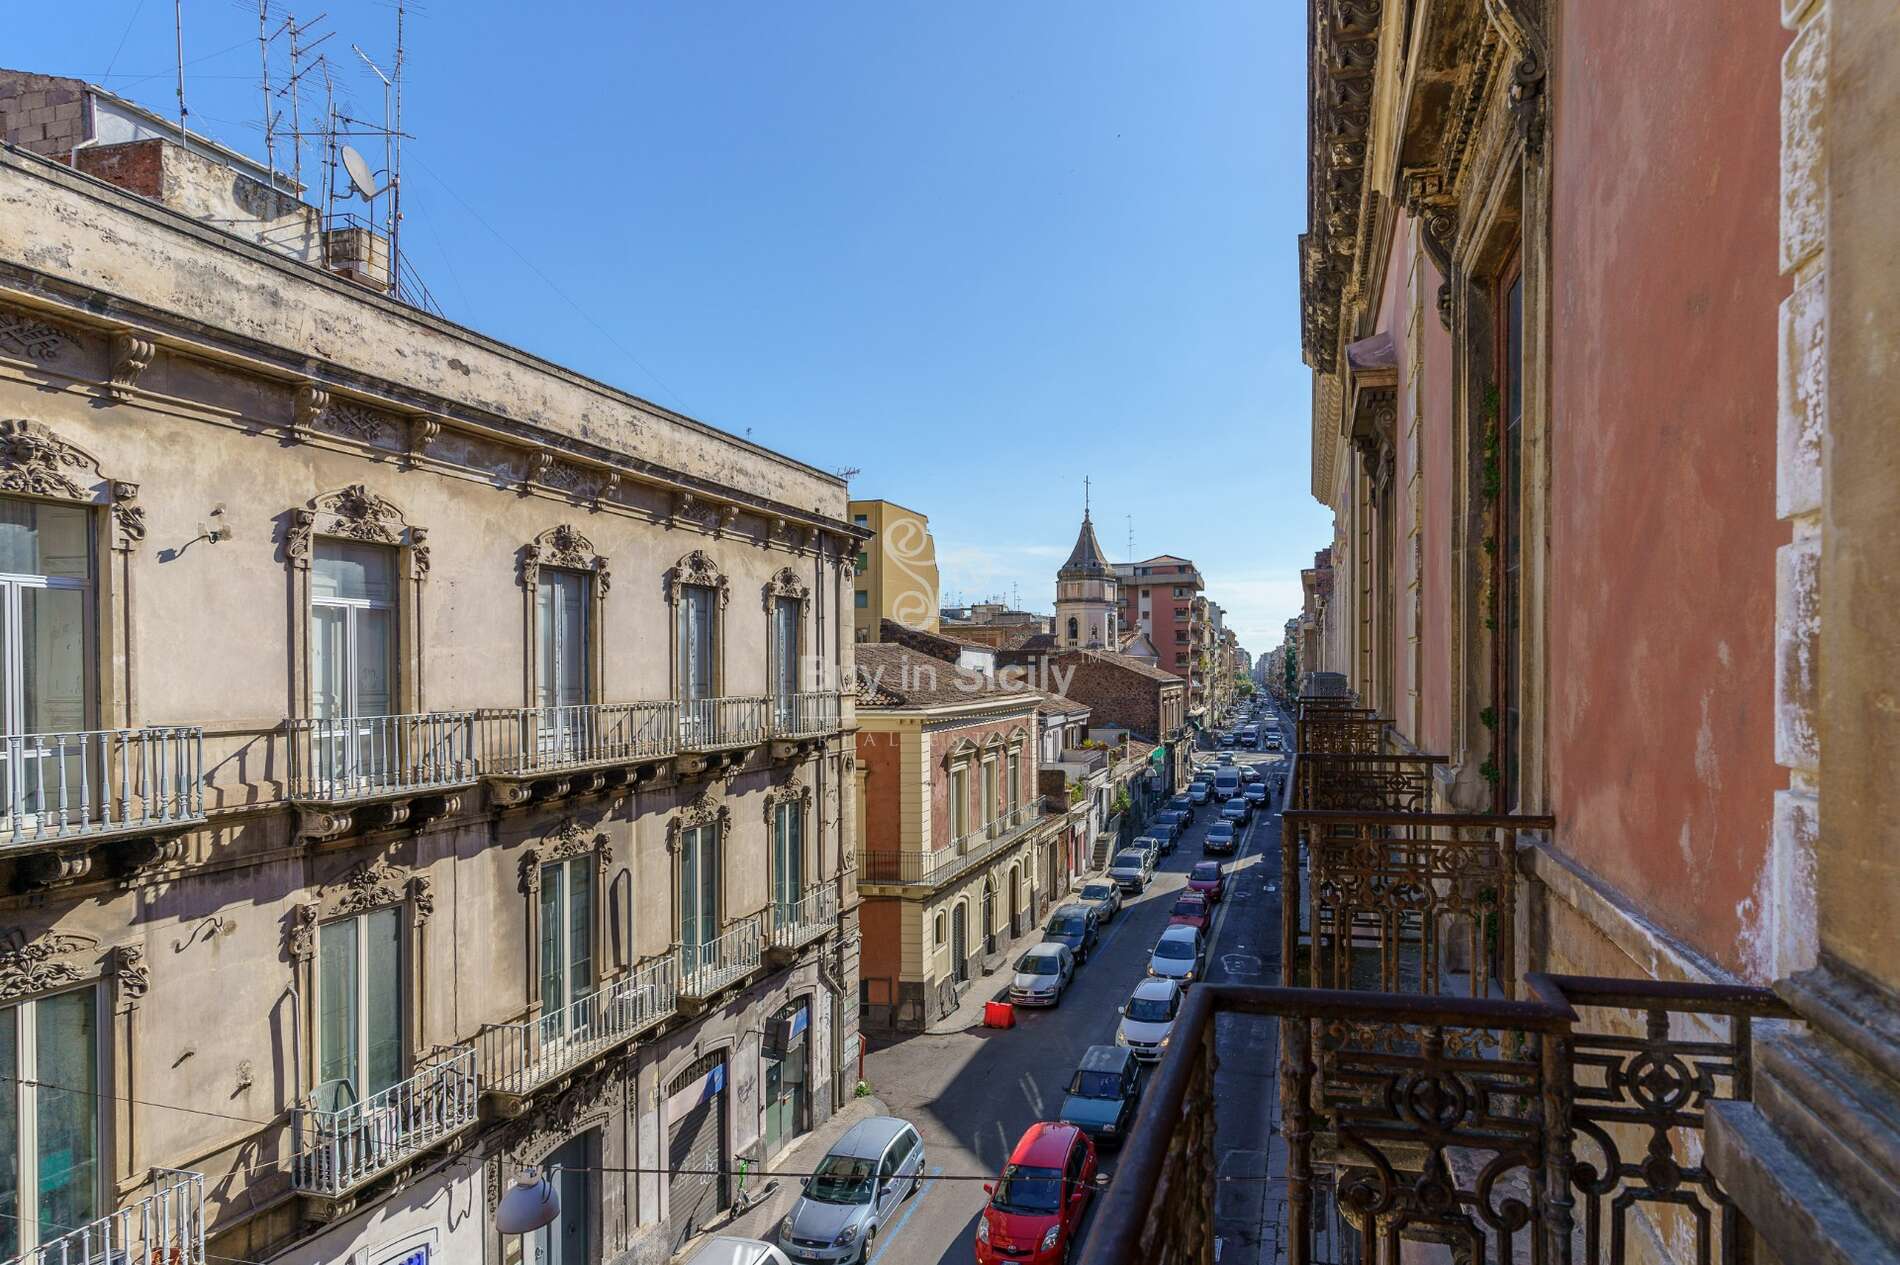  Appartamento d’epoca sito al secondo piano nobile di un importante palazzo storico di Catania.